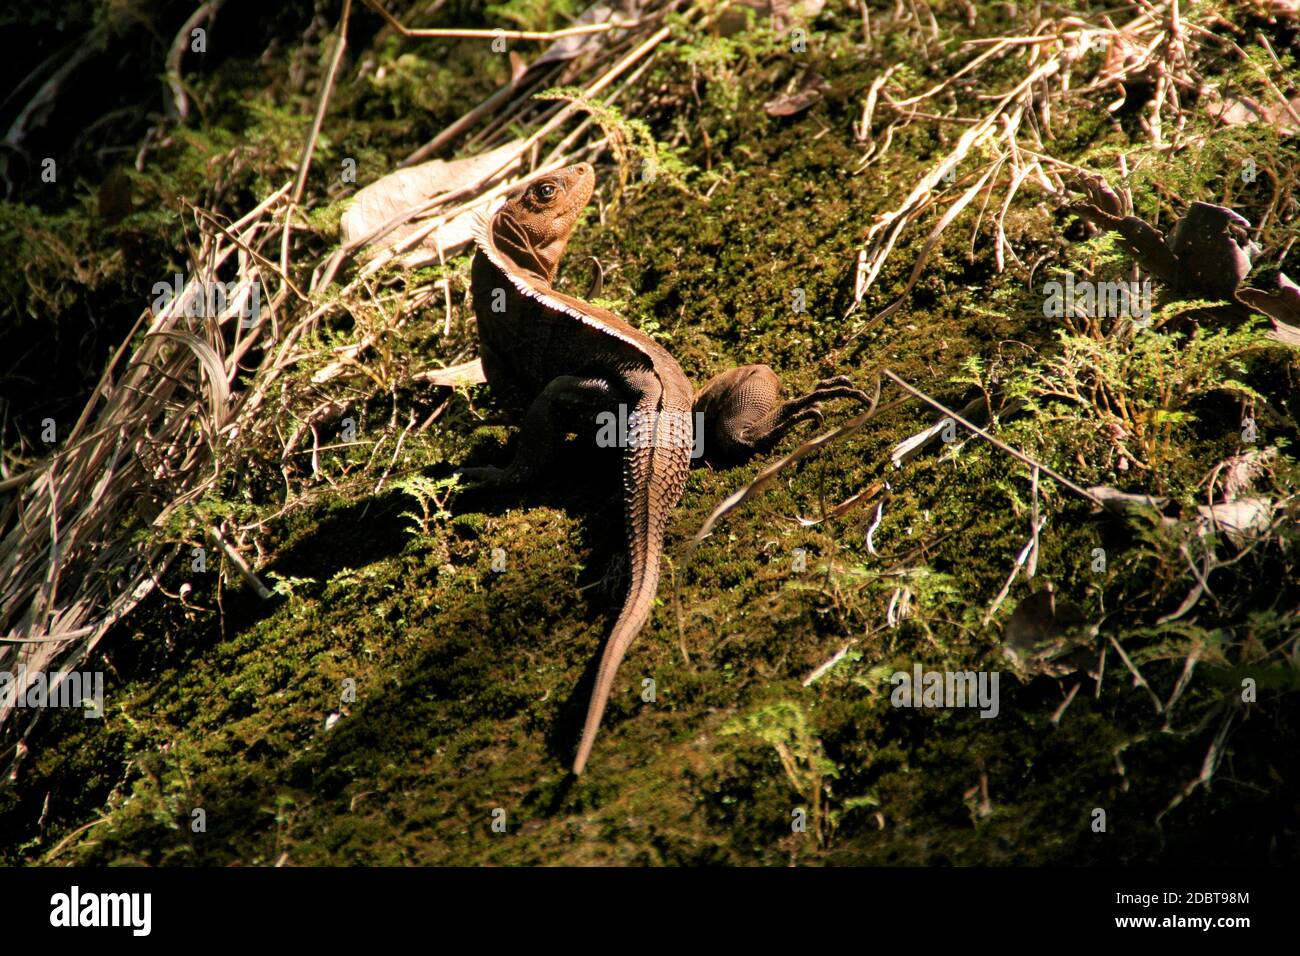 Black Iguana sunning Itself Stock Photo